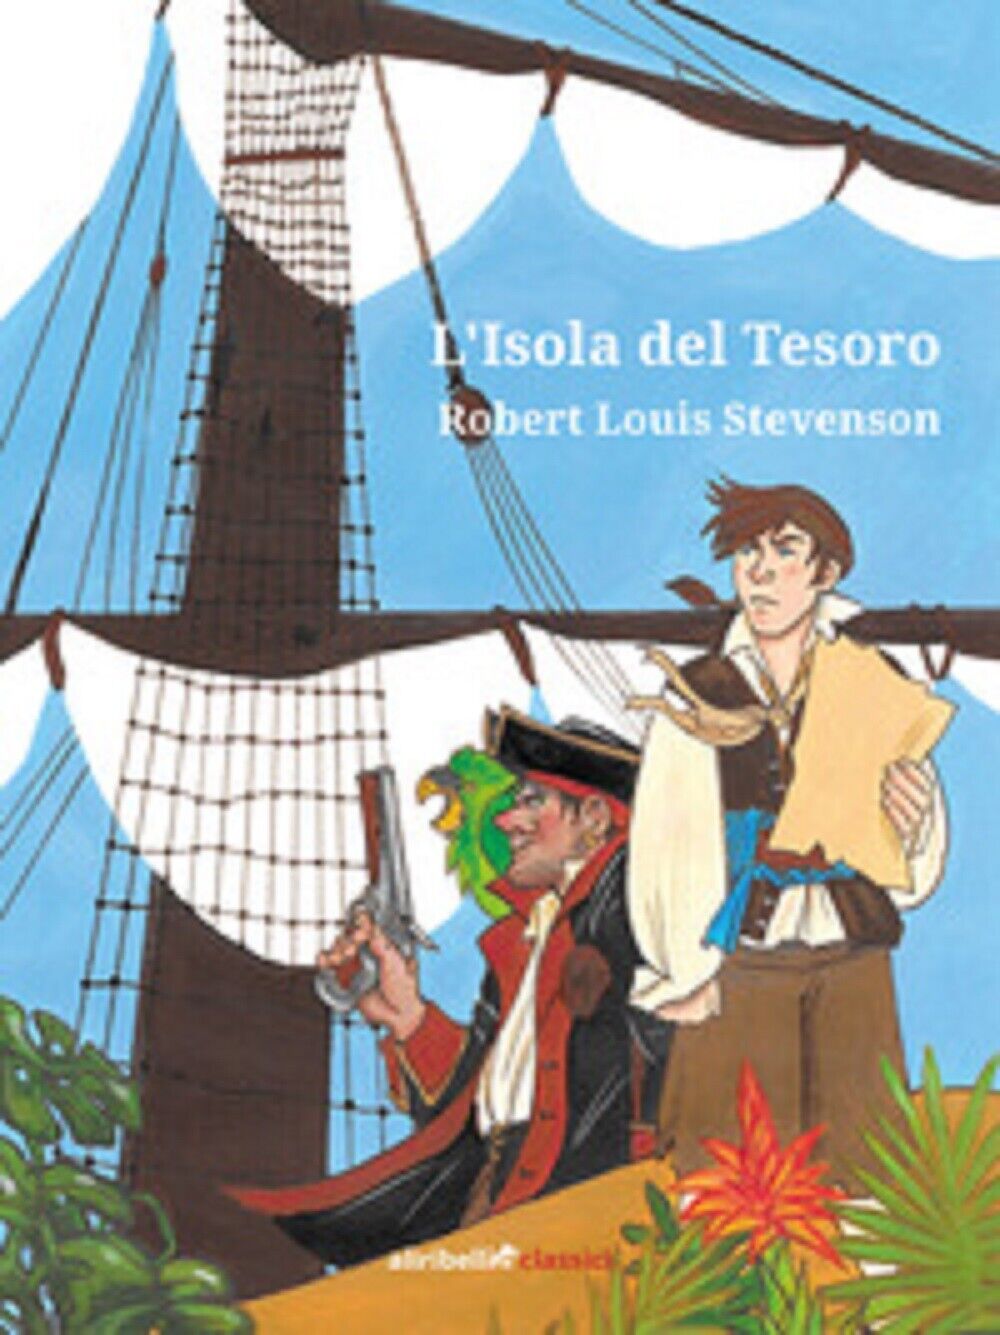   L'isola del tesoro - Robert Louis Stevenson,  2019,  Ali Ribelli Edizioni